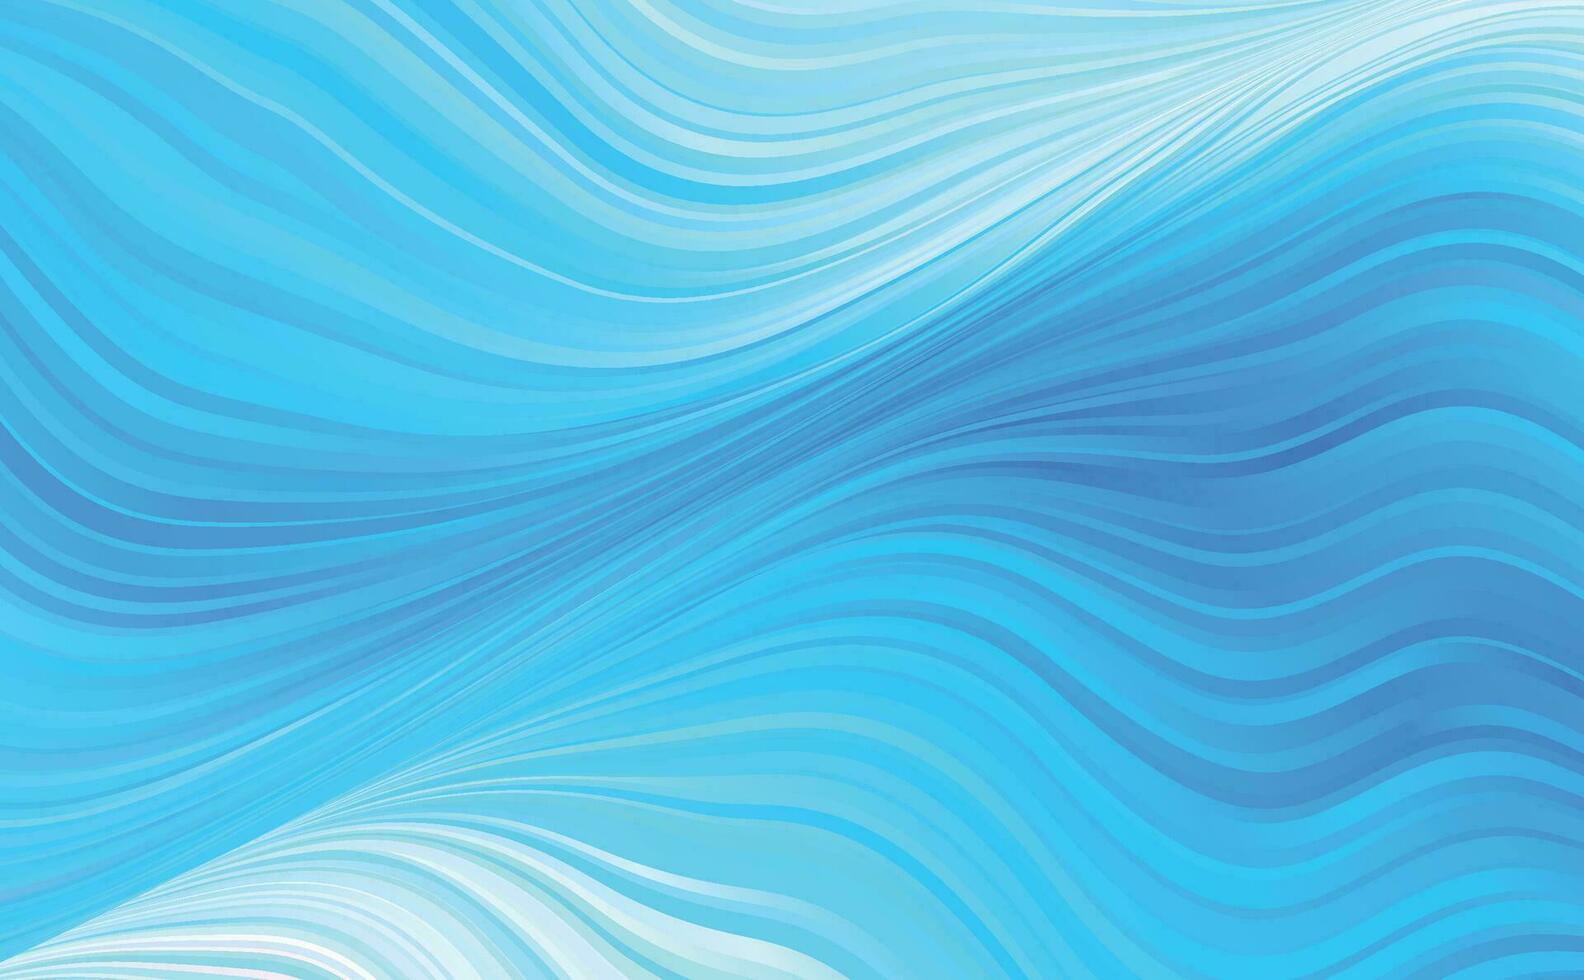 grunge dark blue digital art and light in middle, navy color design background vector